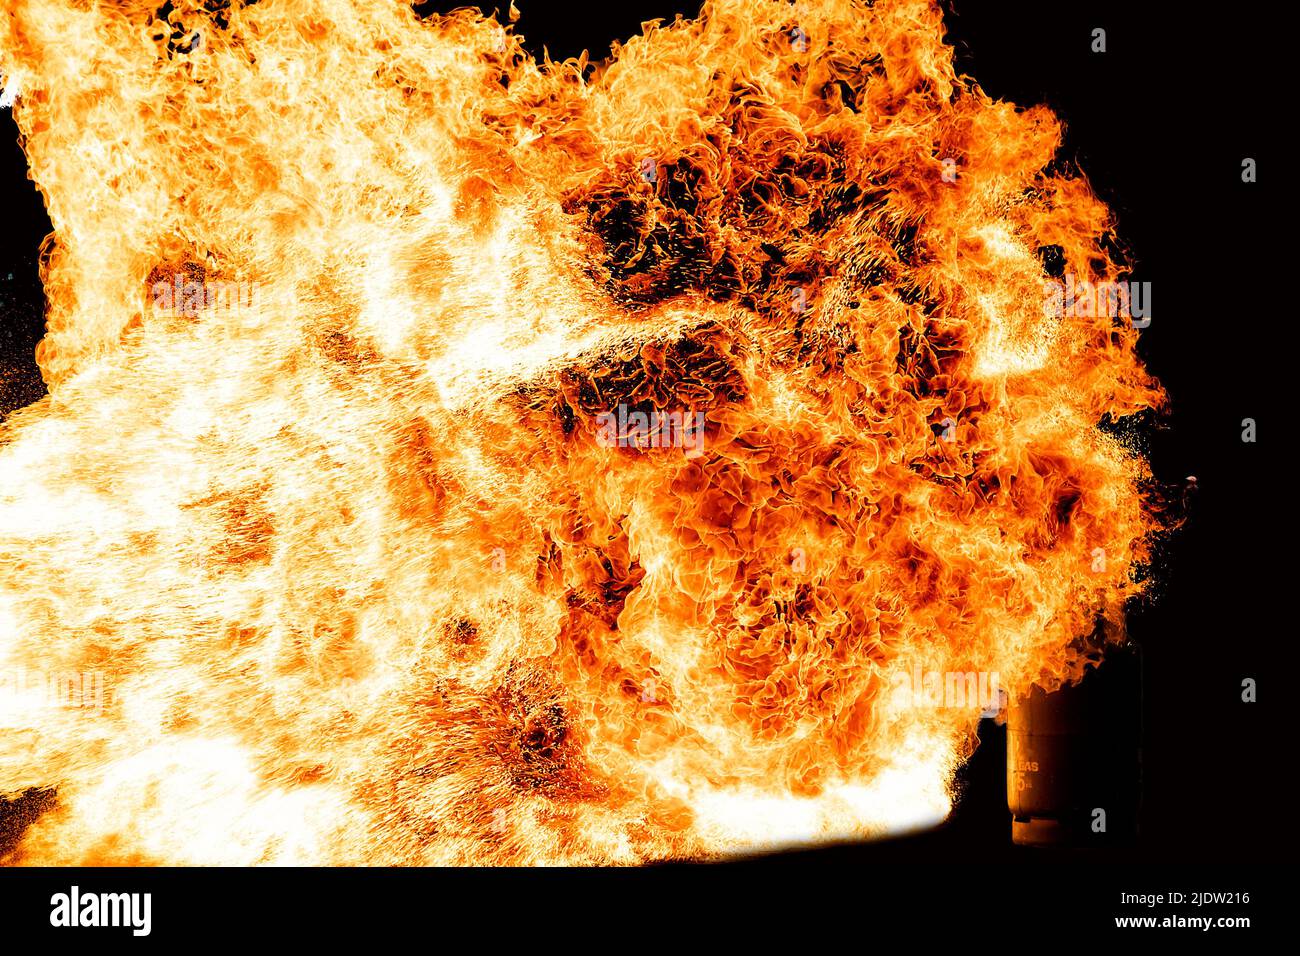 Gas tank -Fotos und -Bildmaterial in hoher Auflösung – Alamy